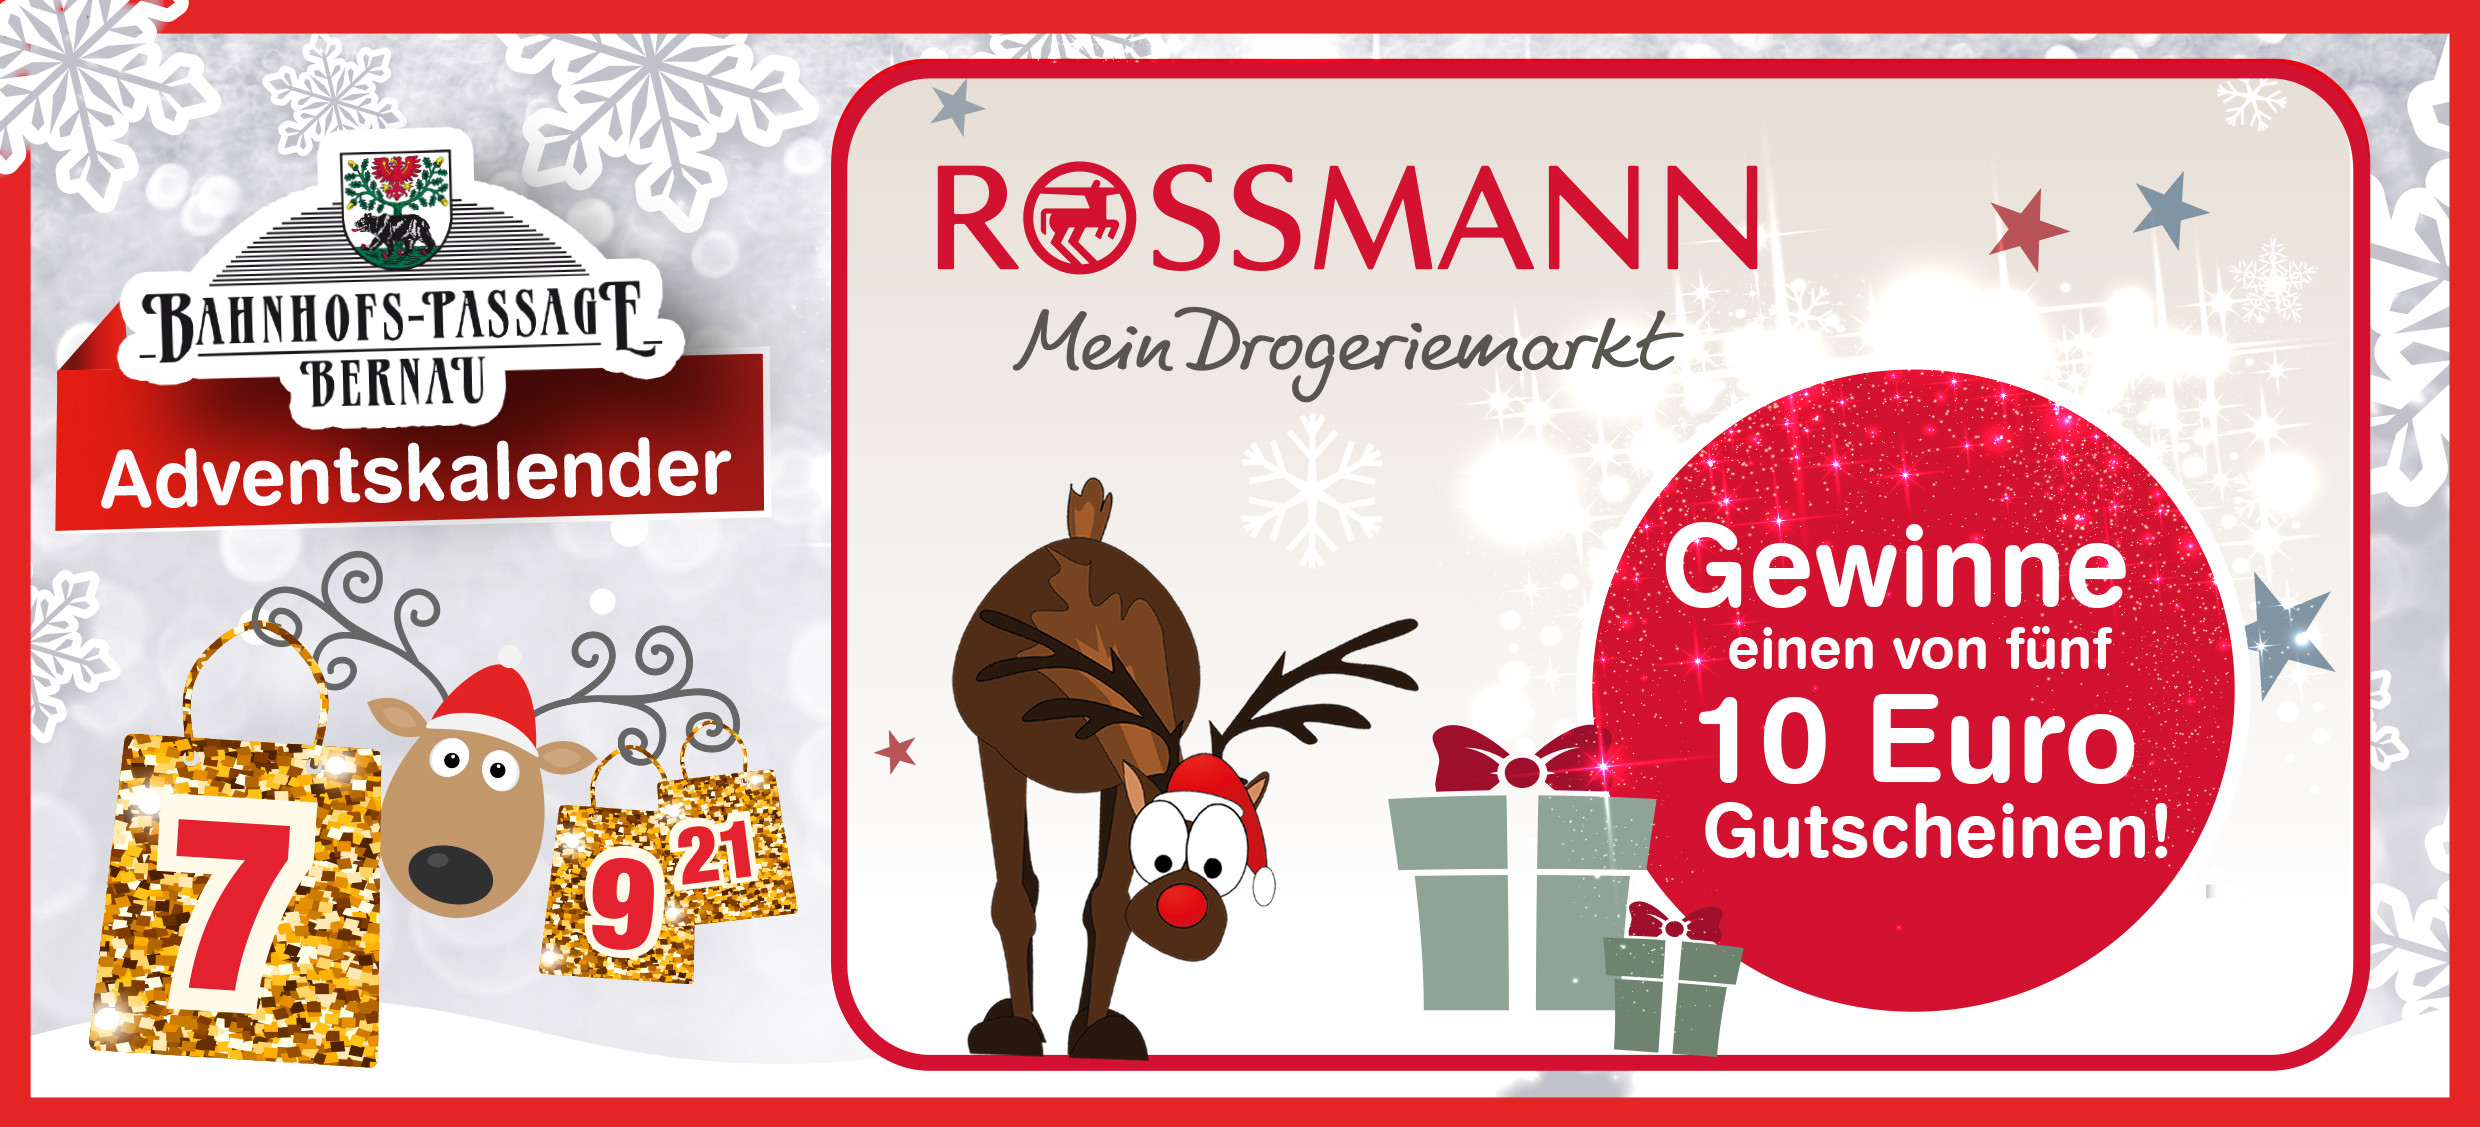 Rossmann Geschenke
 rossmann adventskalender online